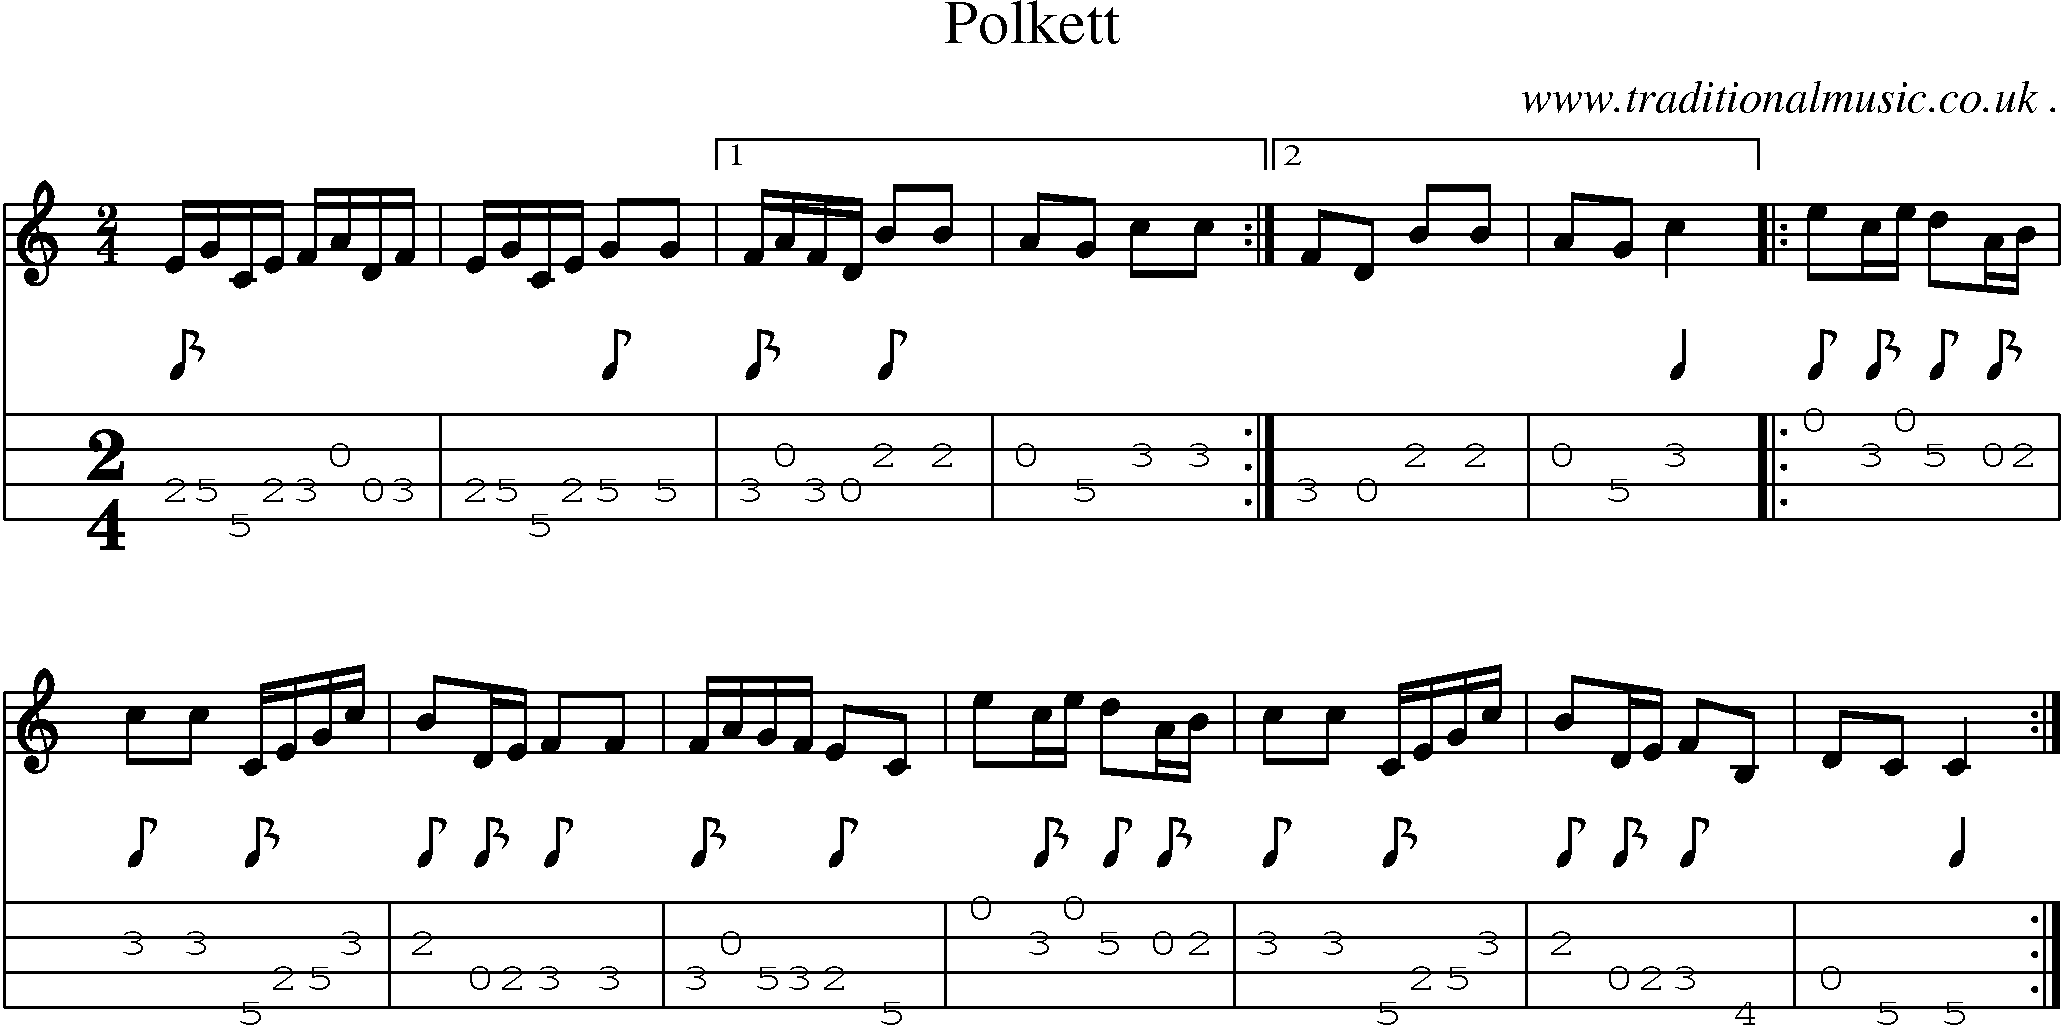 Sheet-Music and Mandolin Tabs for Polkett